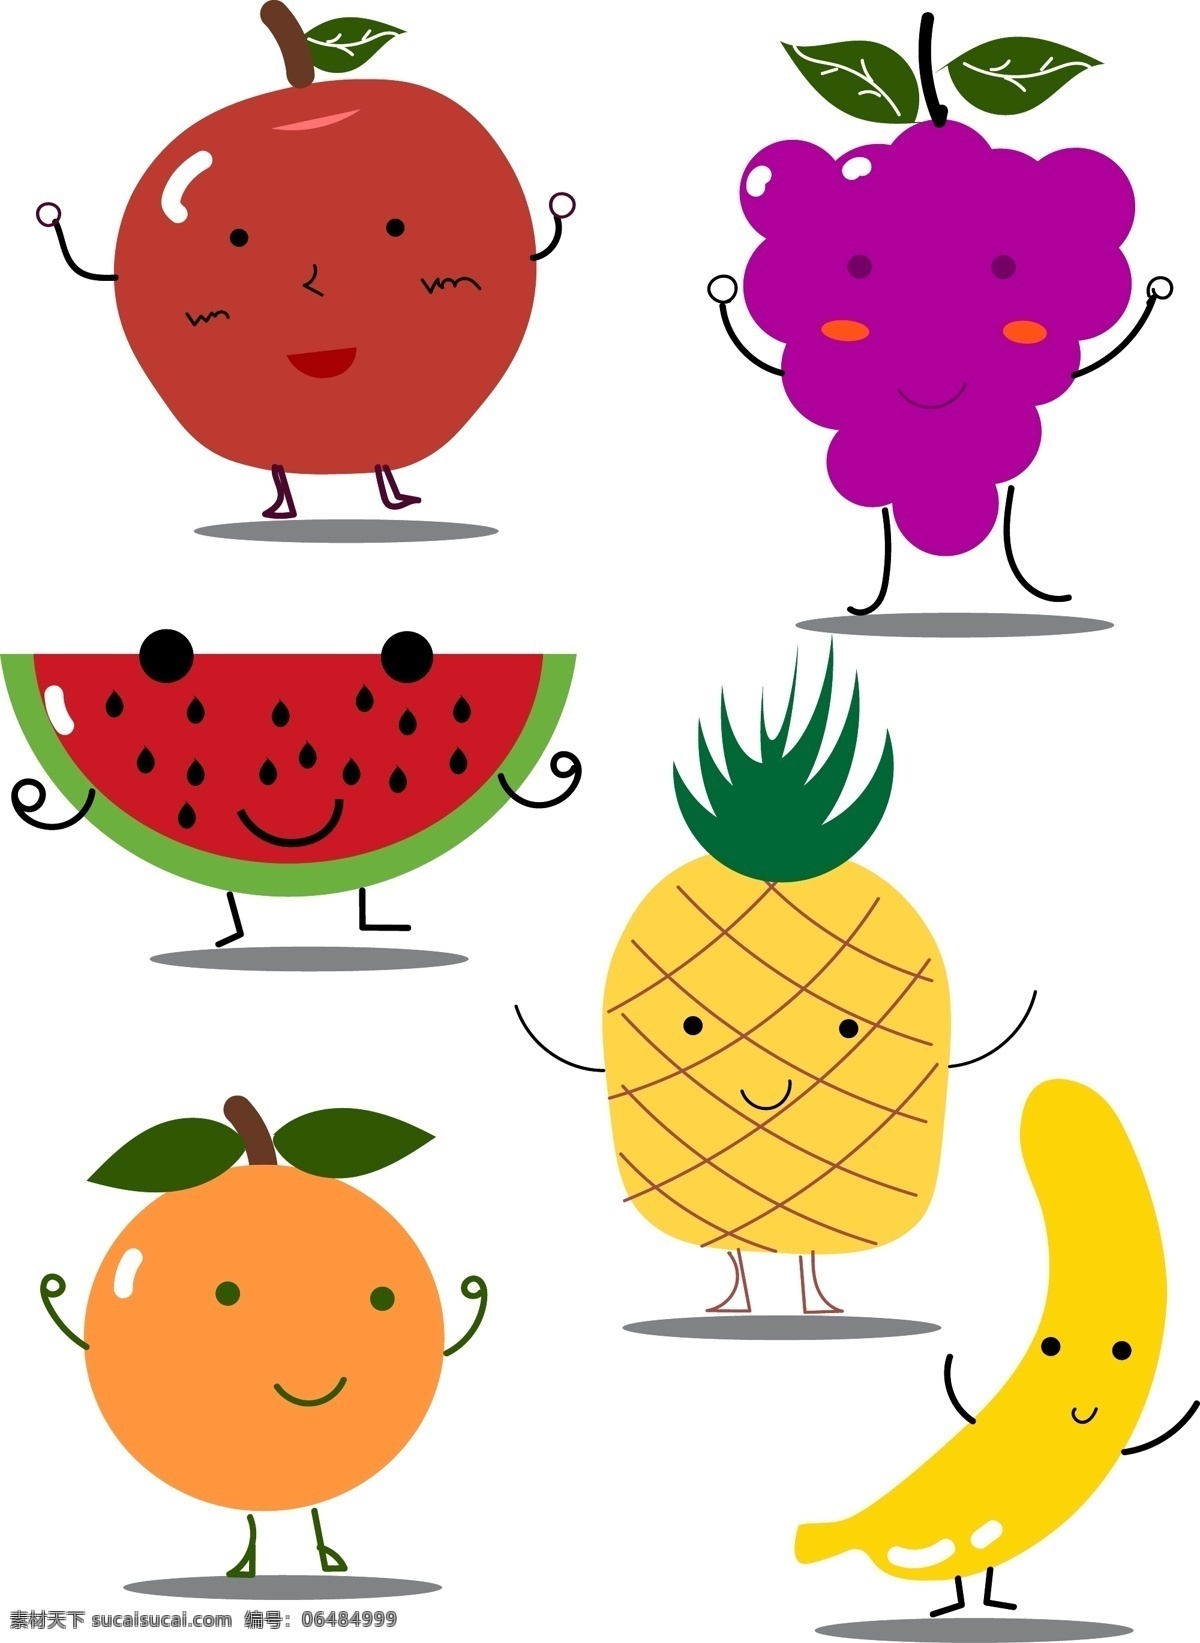 原创 水果 笑脸 合集 水果笑脸 果园 各种水果 动画水果 卡通水果